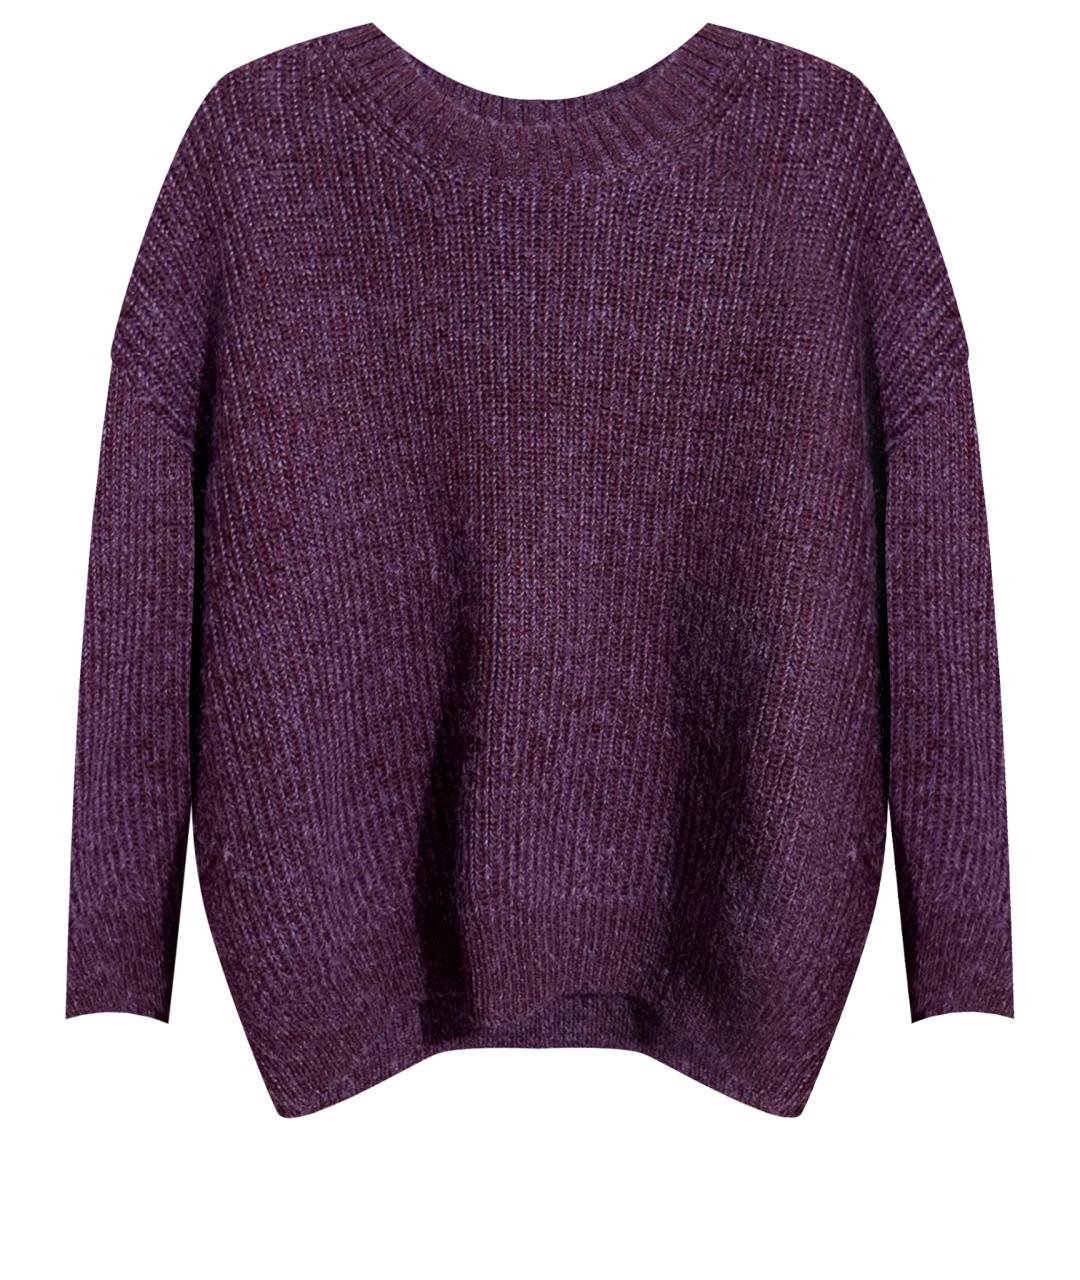 3.1 PHILLIP LIM Фиолетовый шерстяной джемпер / свитер, фото 1